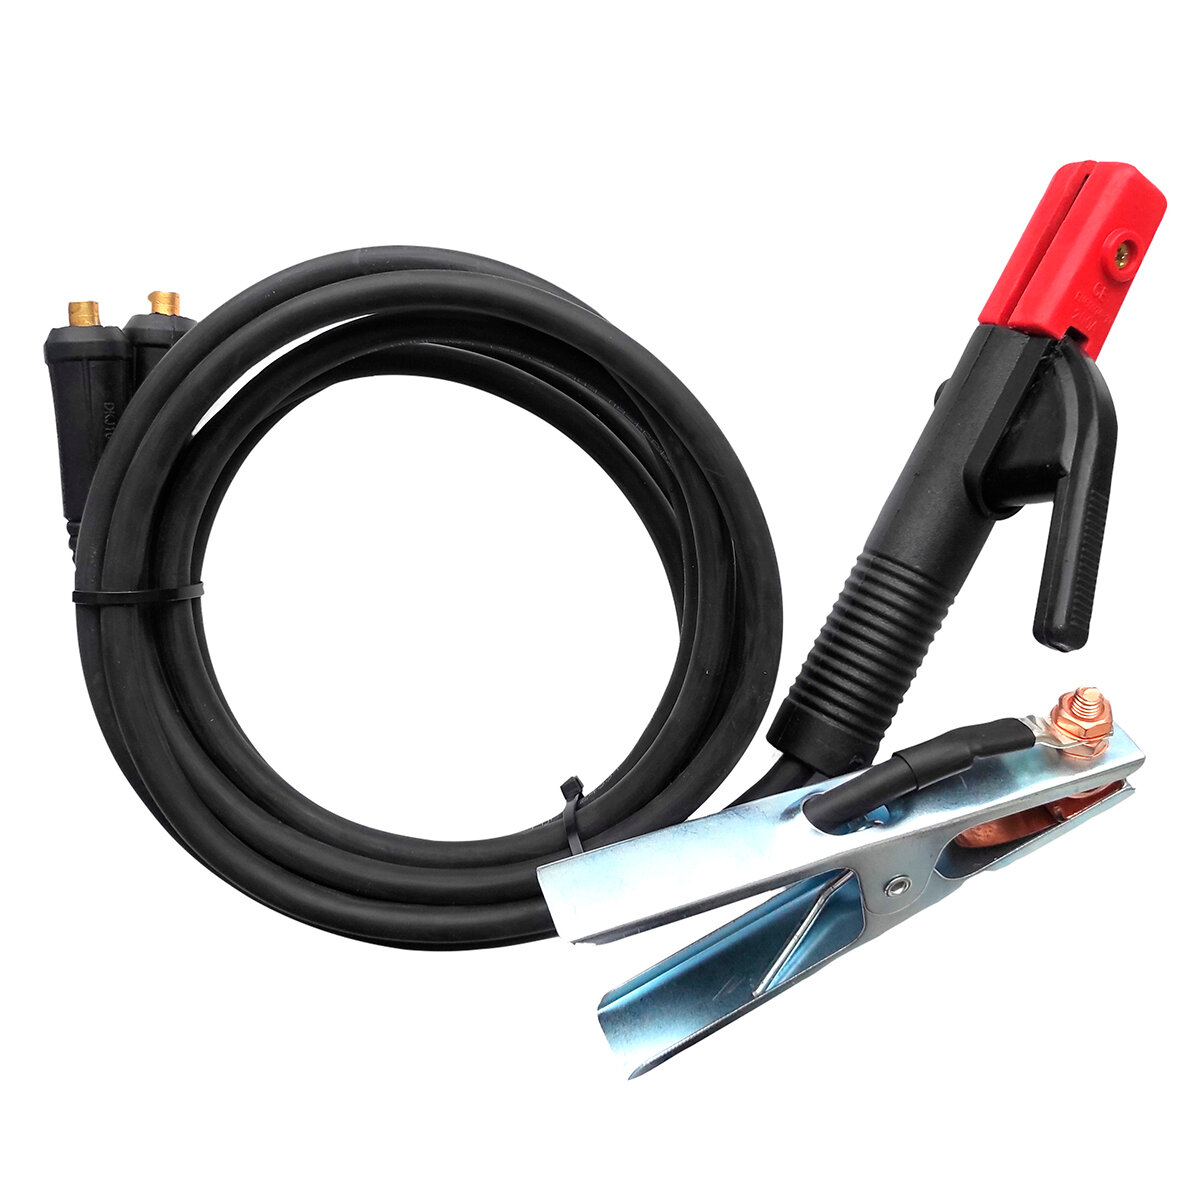 Комплект кабелей d16 mm 2м Профессионал 013 комплект сварочных кабелей vebex 2 0 метра держатели 300а вилки 10 25